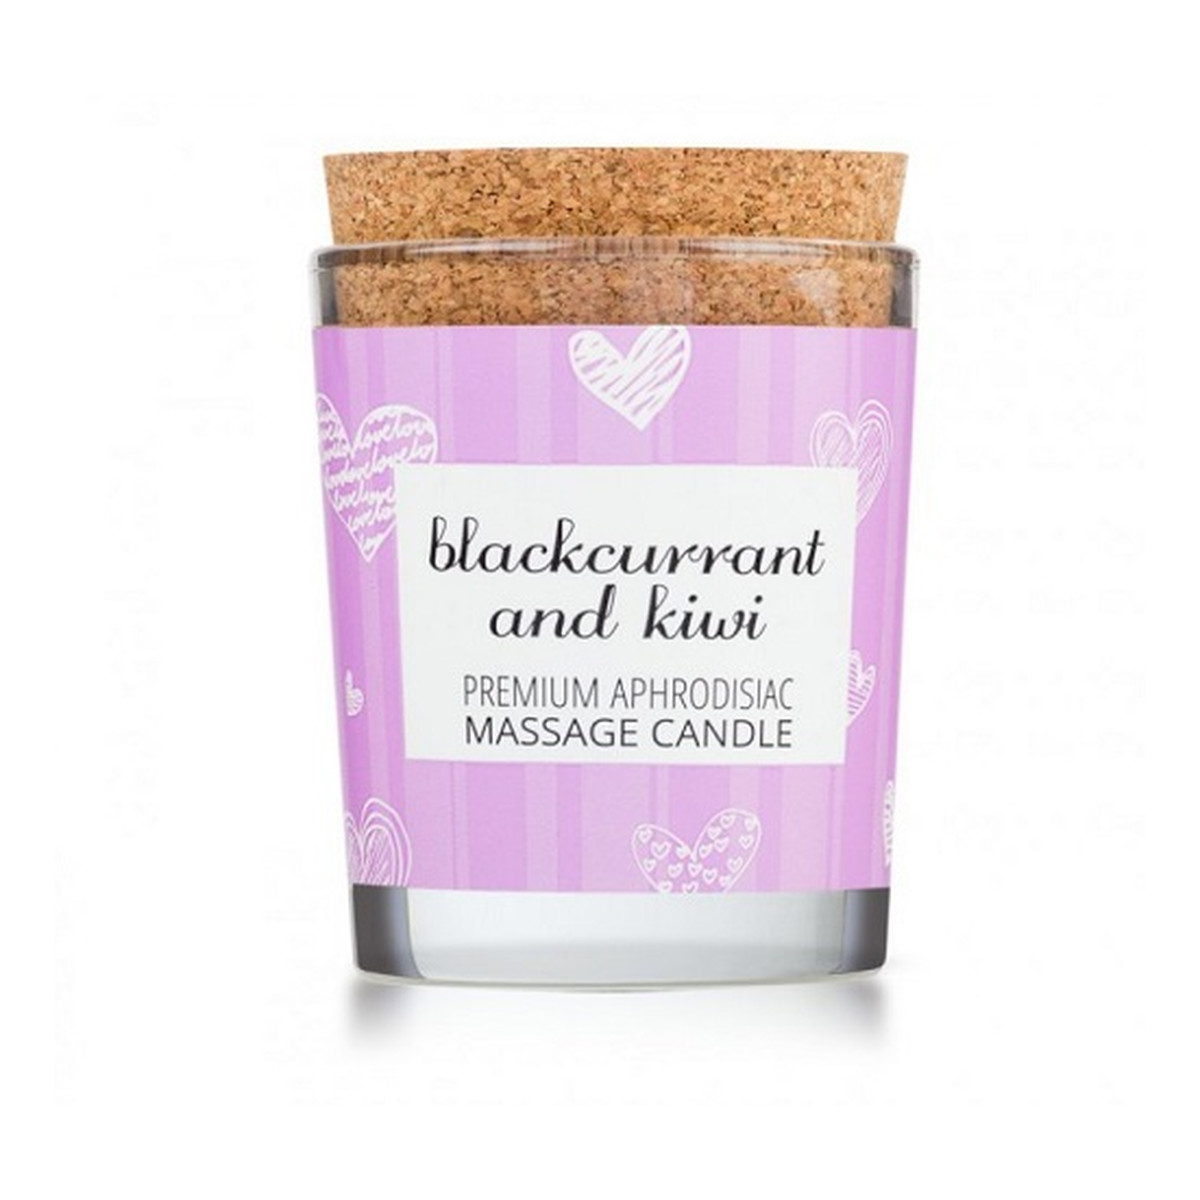 Magnetifico Enjoy it! massage candle świeca do masażu porzeczka & kiwi 70ml